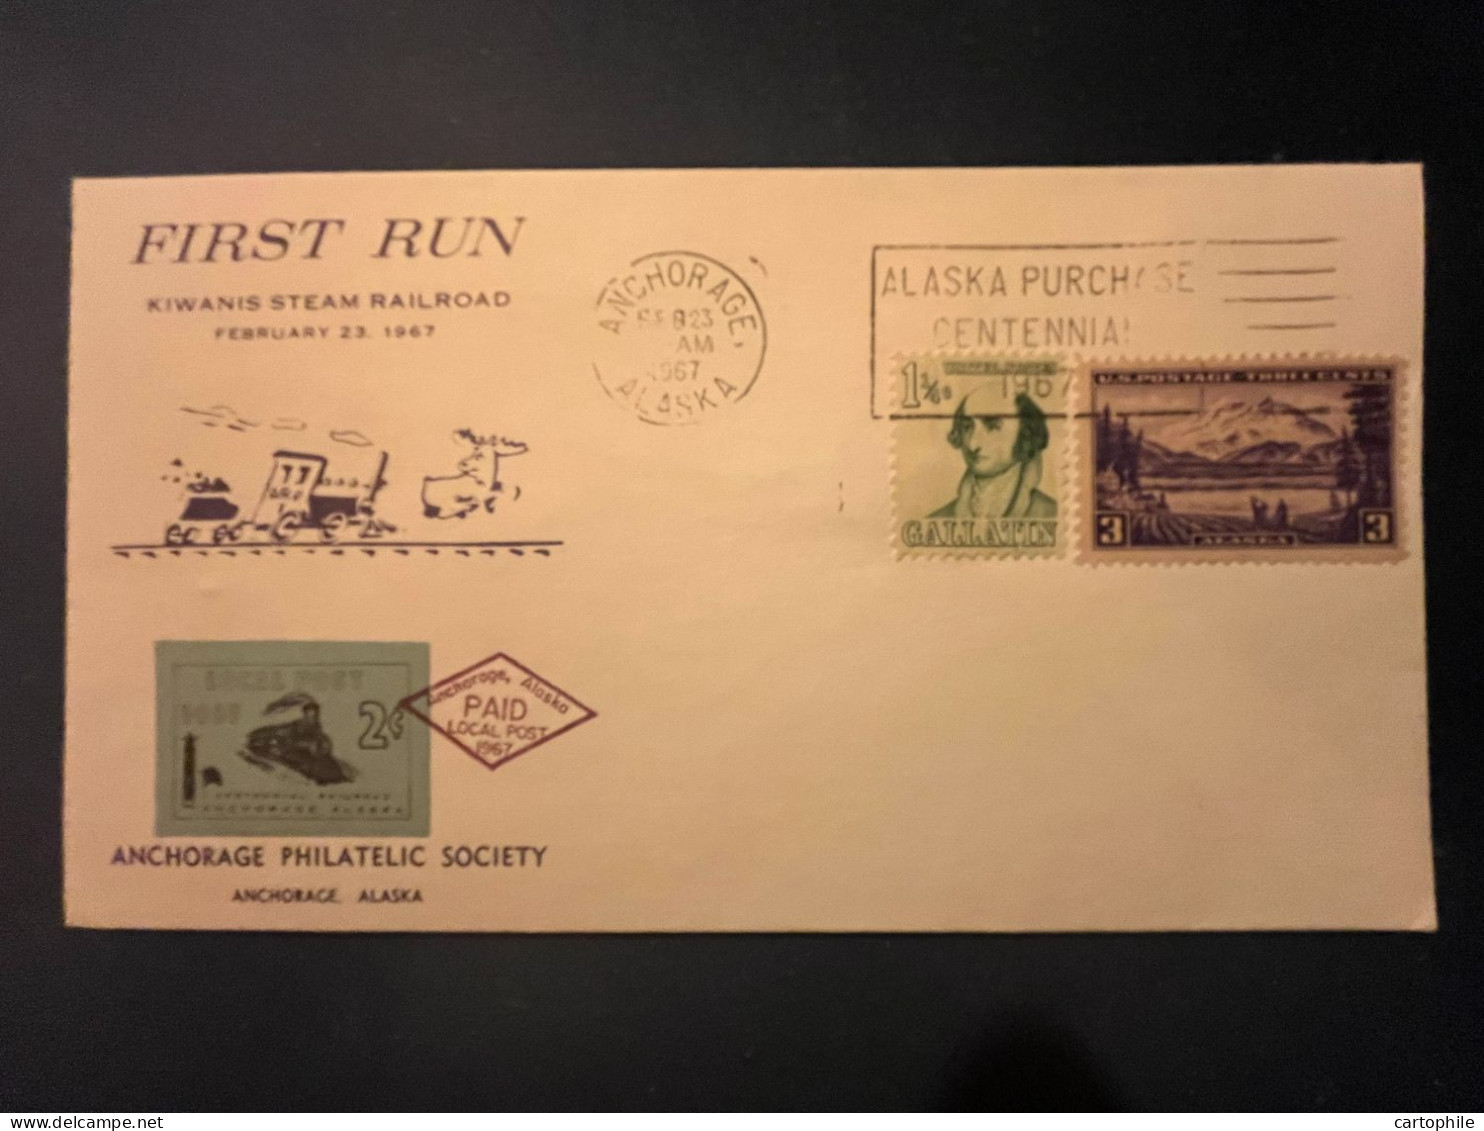 Local Post Anchorage Alaska - First Run Kiwanis Steam Railroad Cover 1967 - Timbre Local 2c Centennial Railroad - Cartas & Documentos